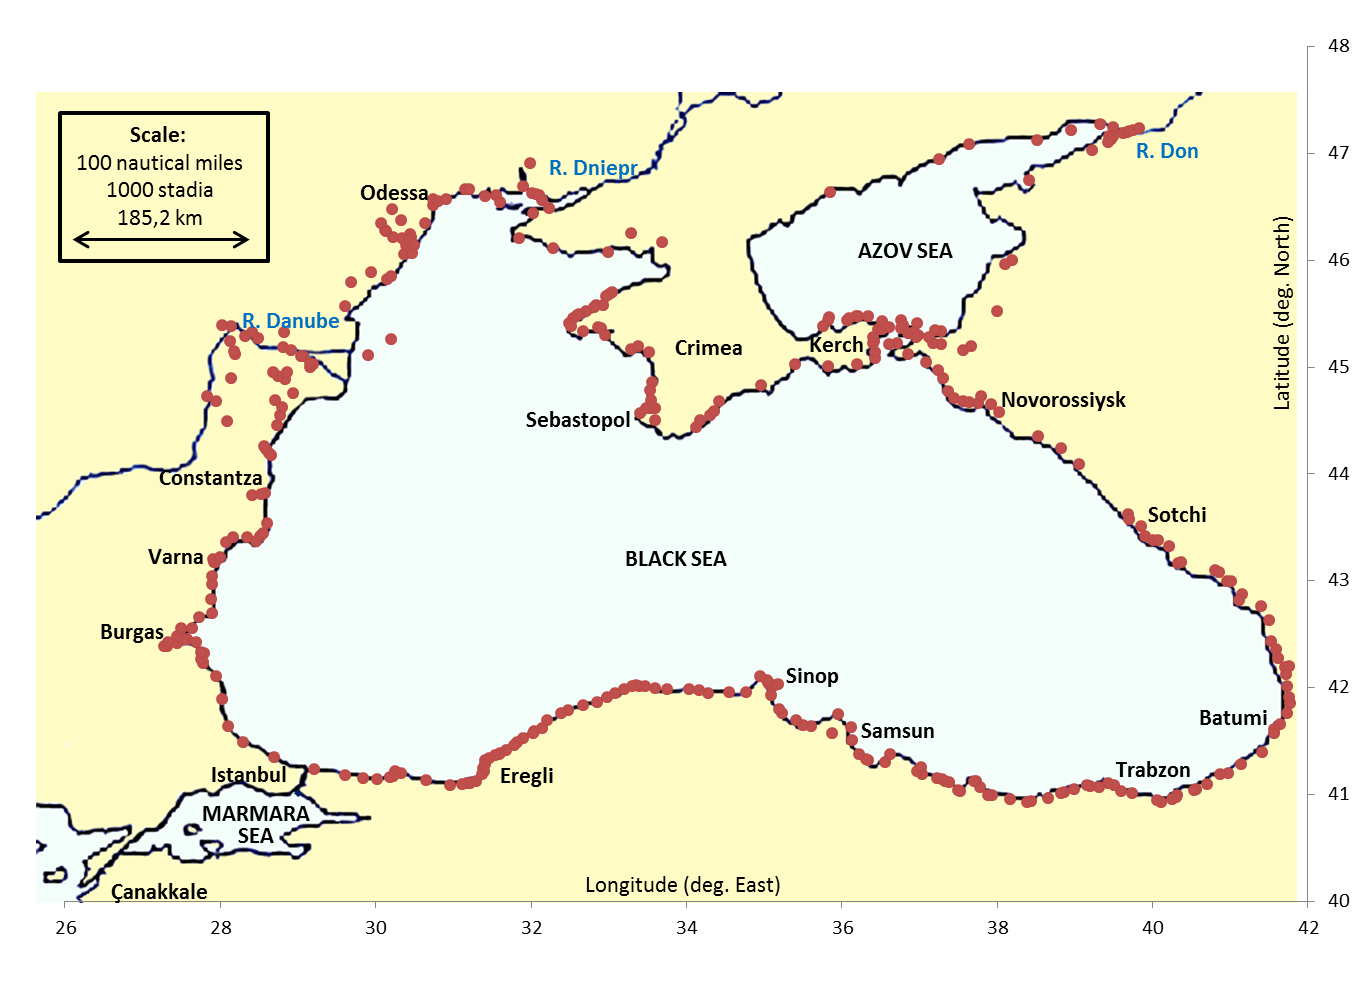 Синоп на карте. Черное море на карте. Синоп на карте черного моря. Порт Синоп на карте черного моря. Батуми на карте черного моря.